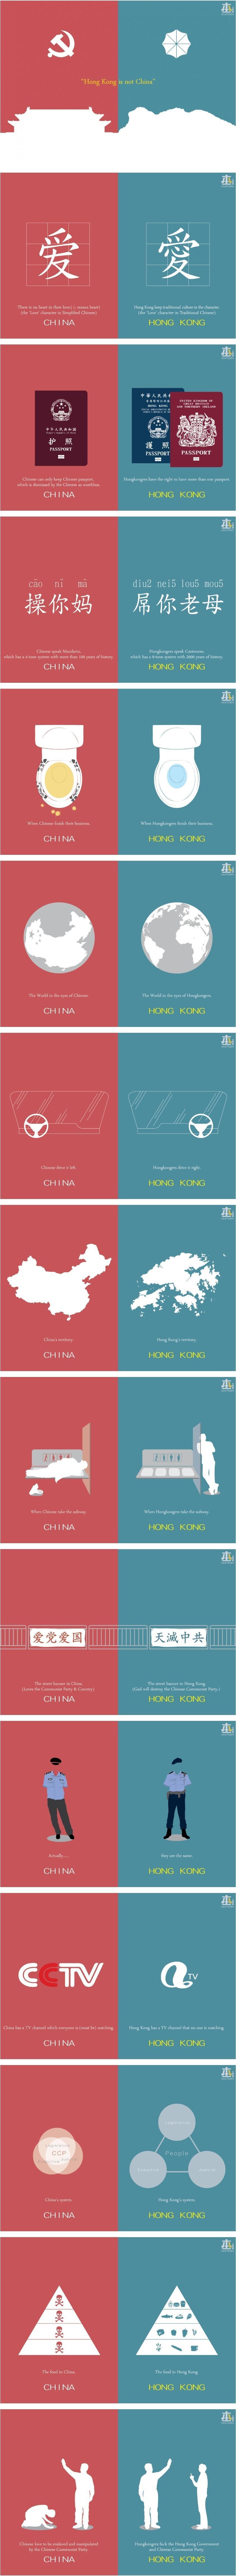 홍콩과 중국의 차이.